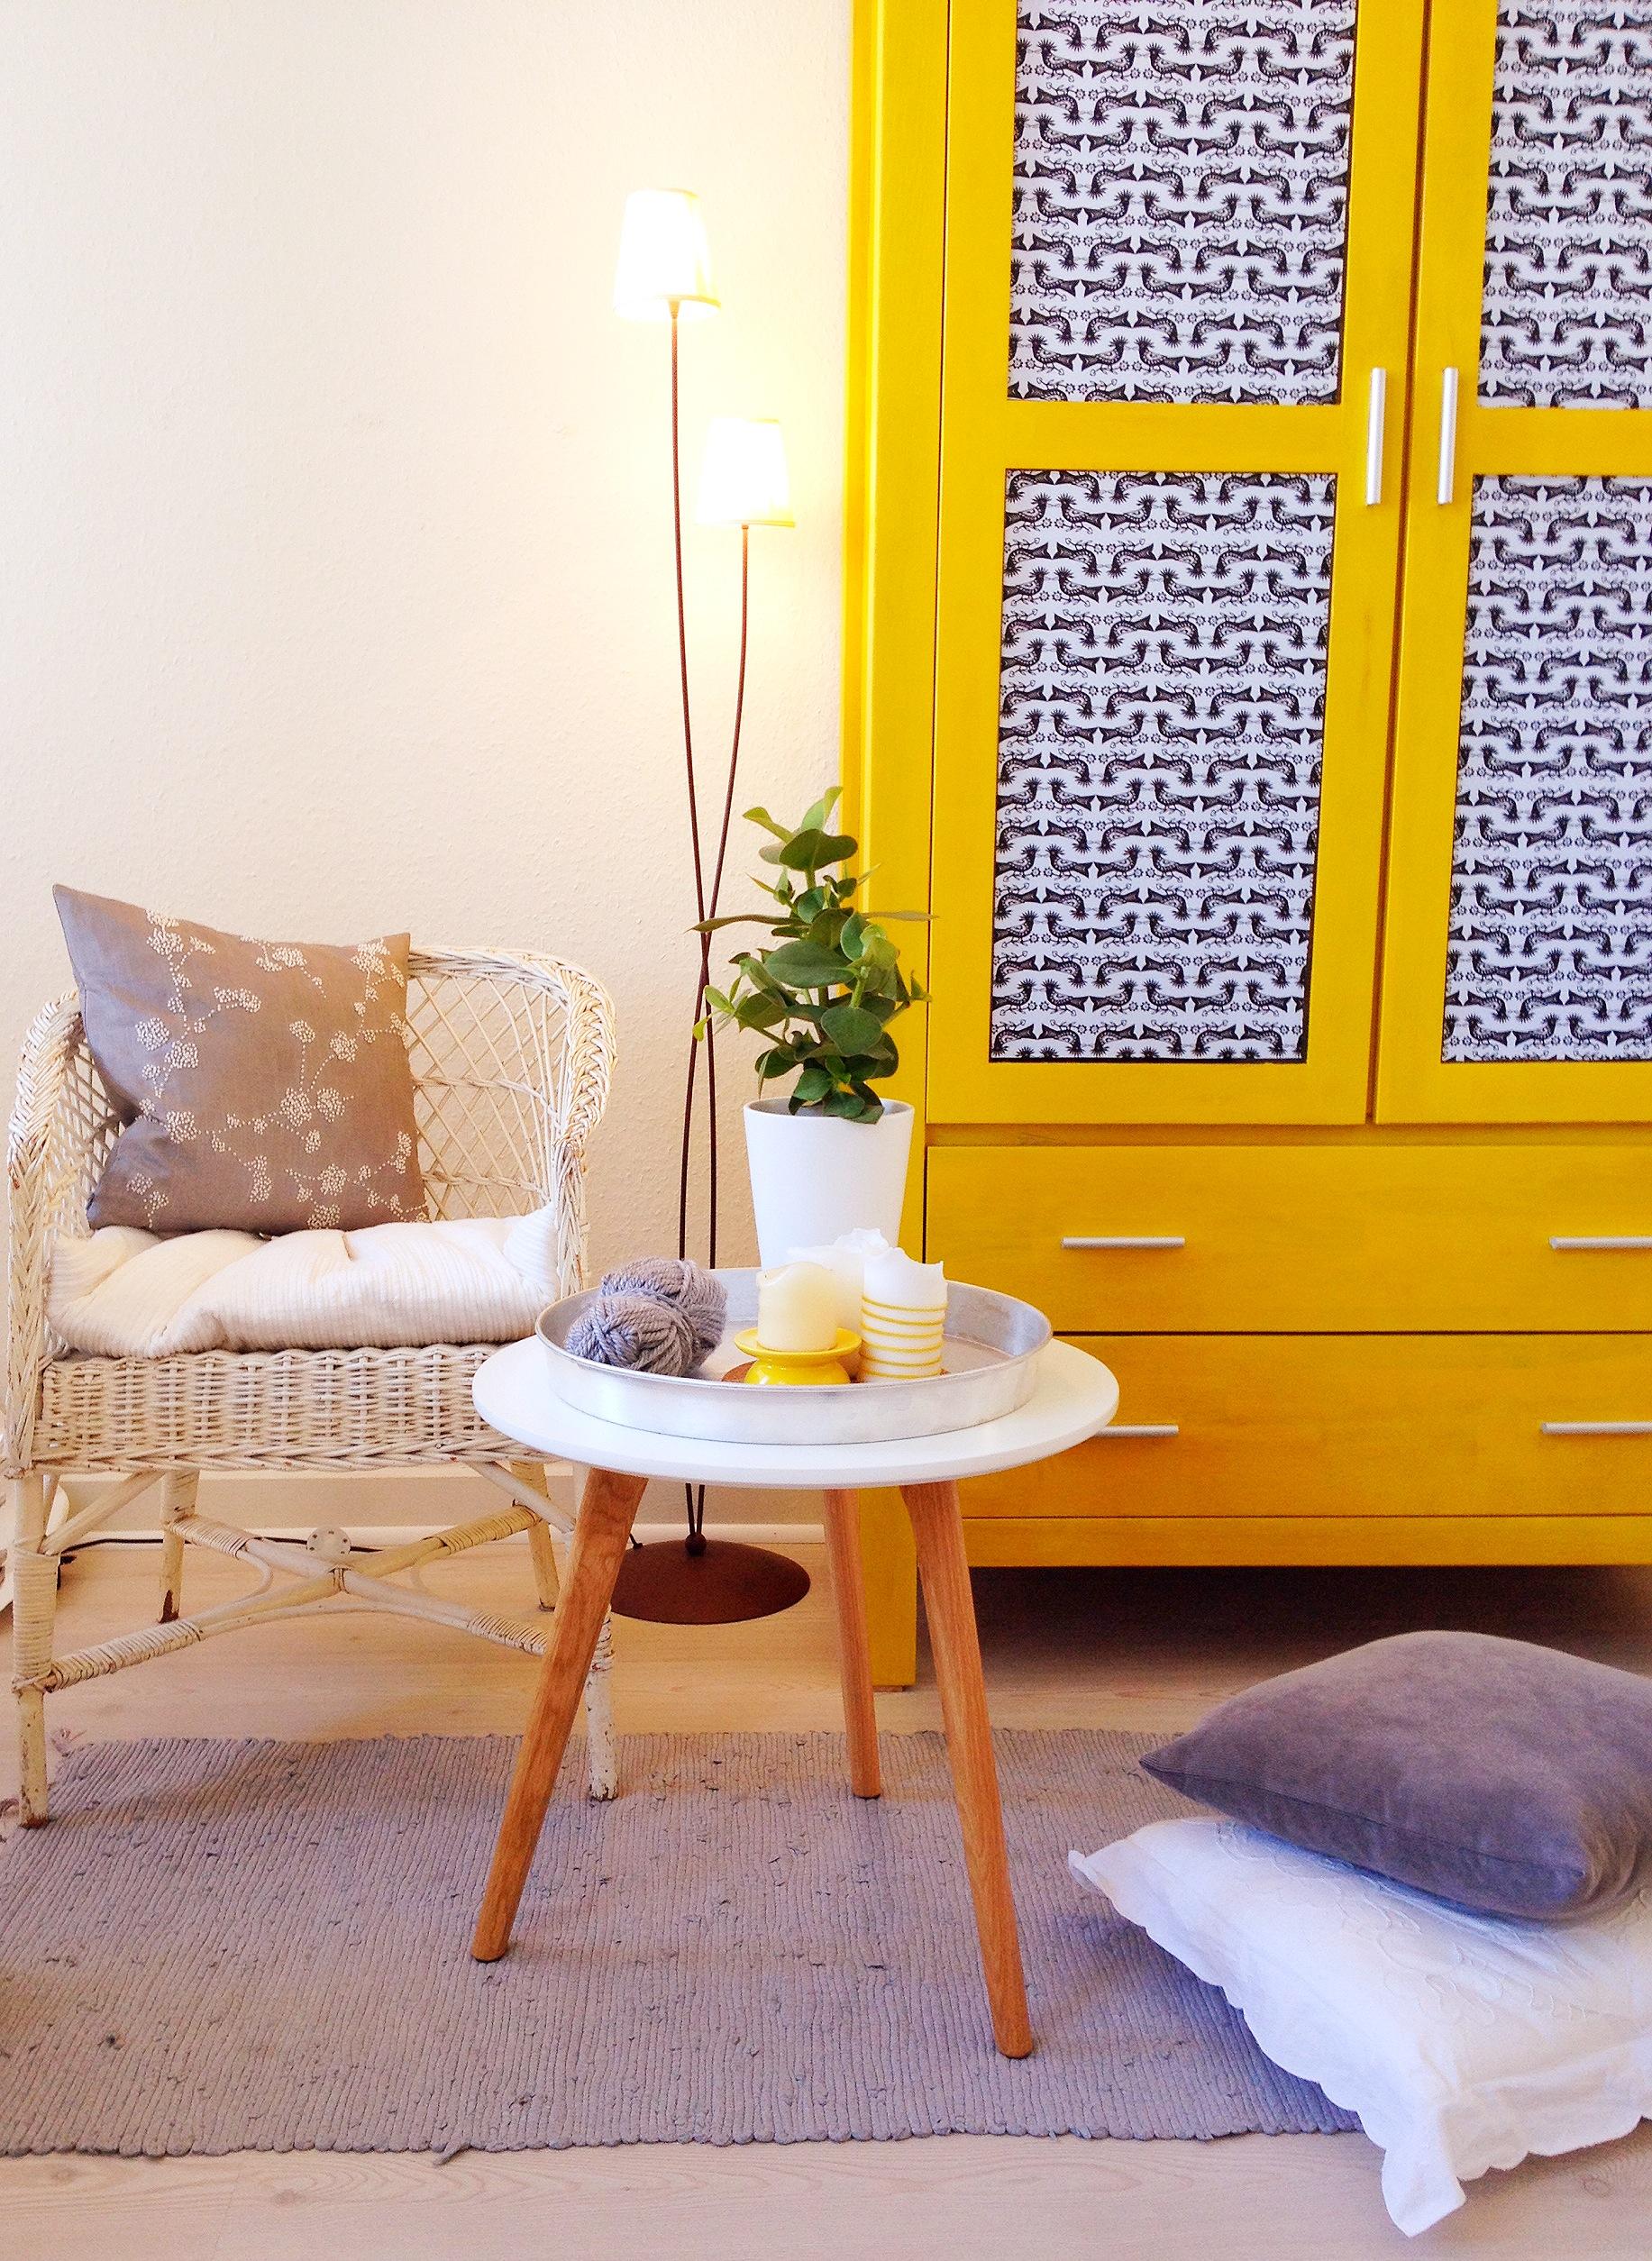 Gelb #beistelltisch #wohnzimmer #schrank #weißerkorbstuhl ©Hannah Lühr-Tanck